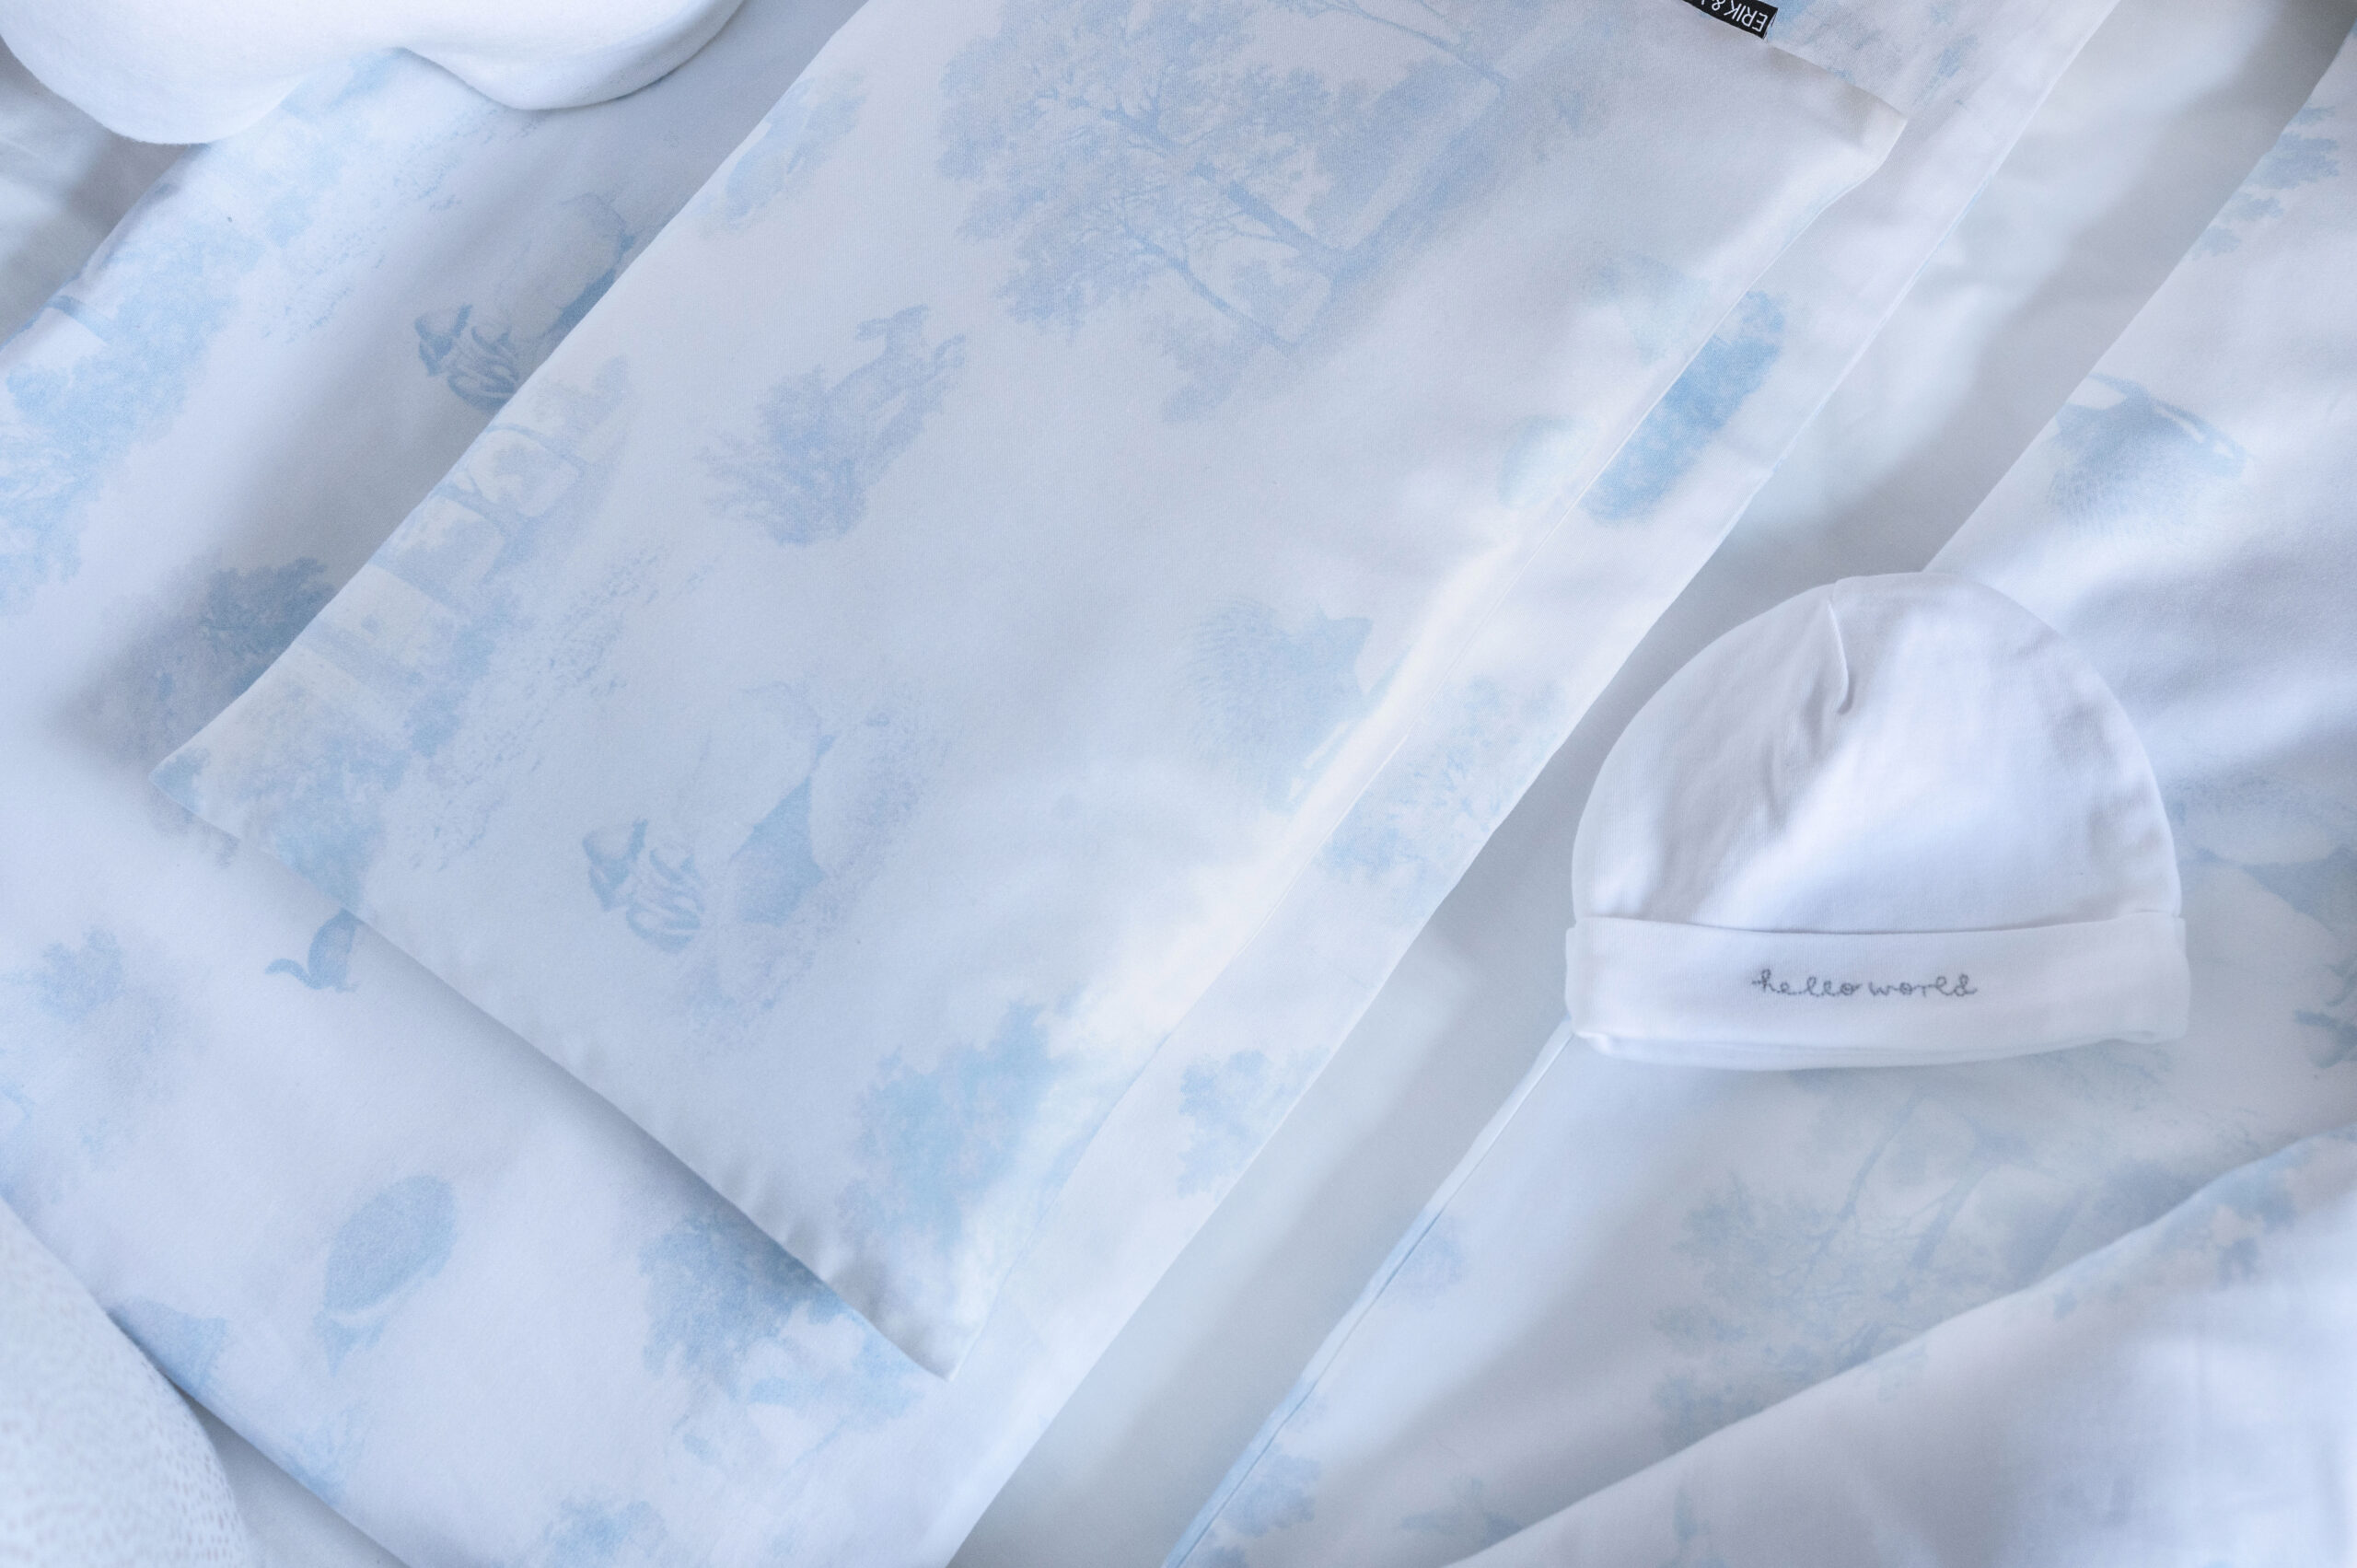 Dior Square Pillow Blue Toile de Jouy